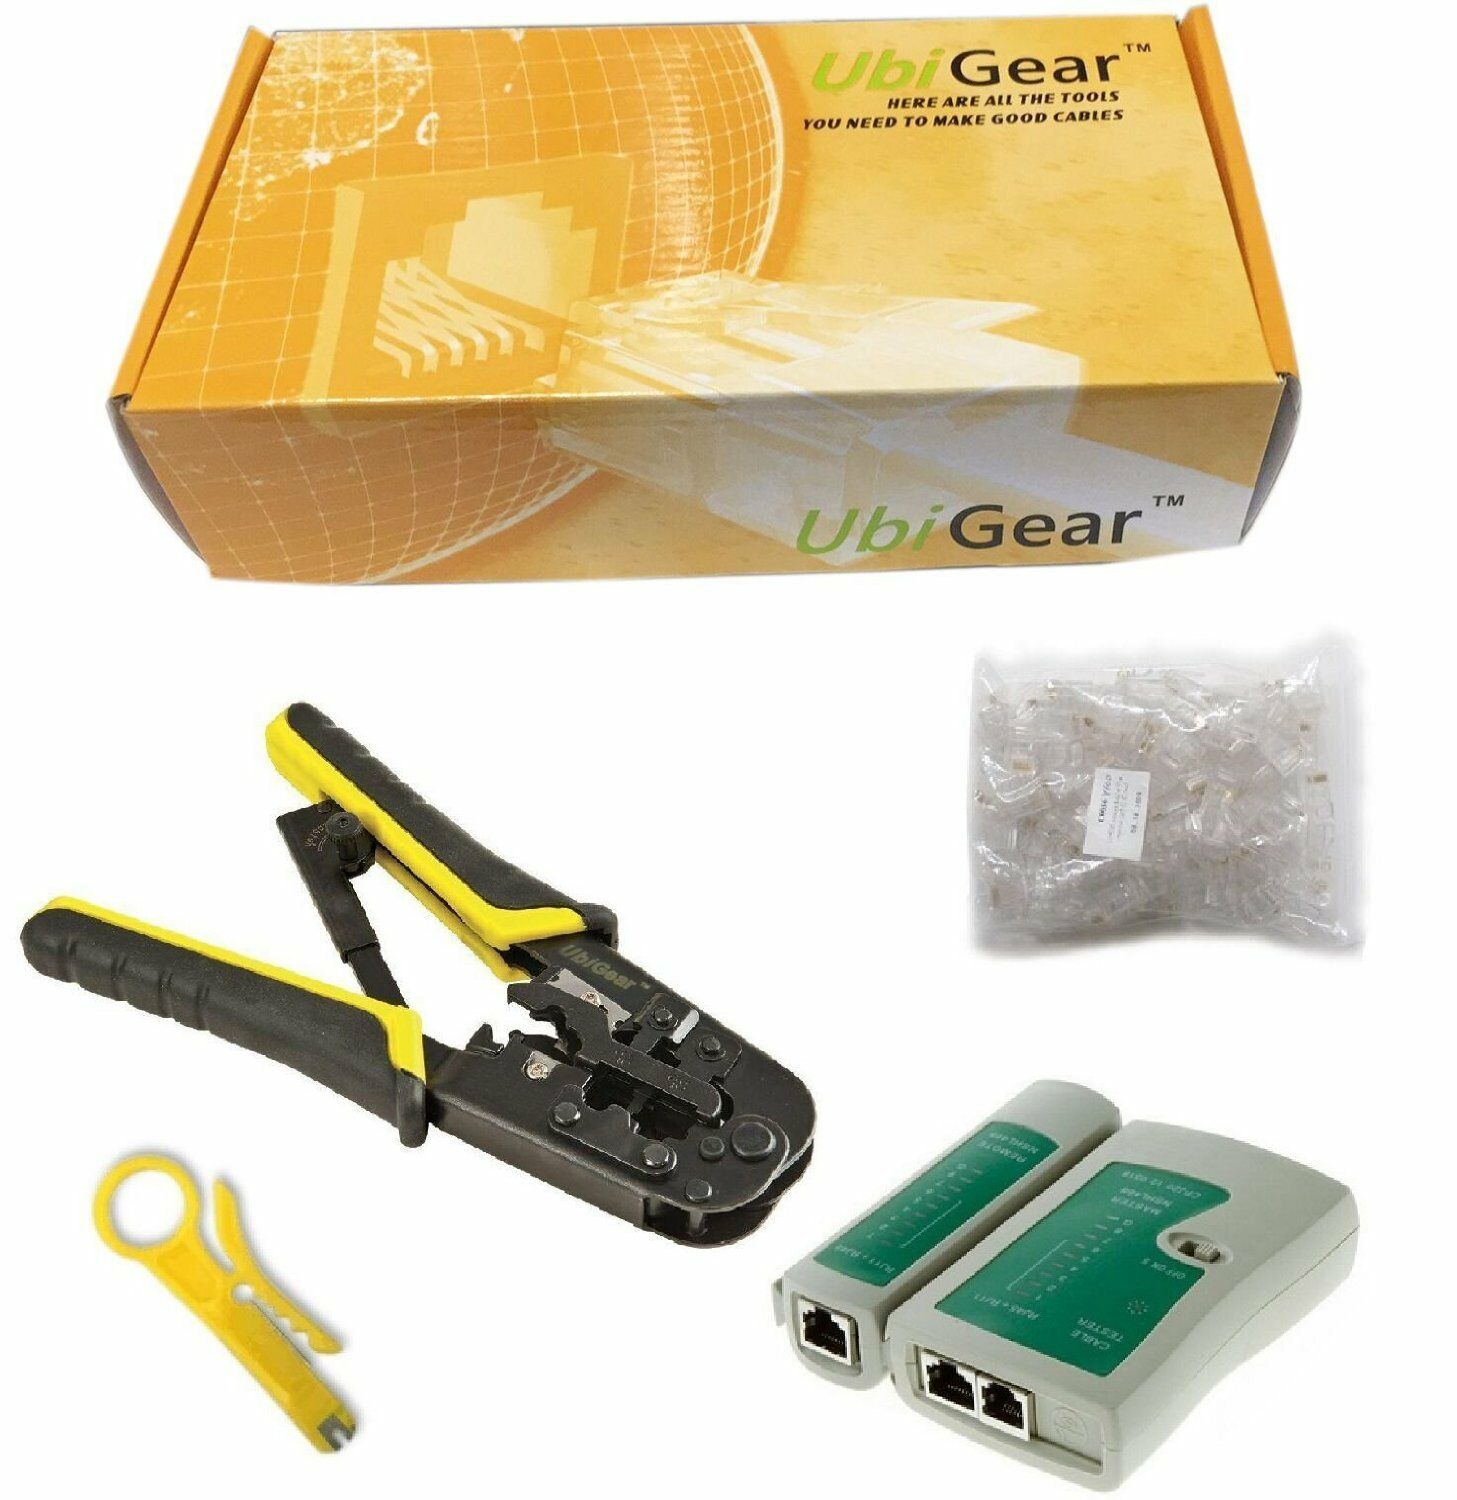 Ubigear® Network Tester +crimp Crimper + 100 Rj45 Cat5e Connector Plug Tool Kits